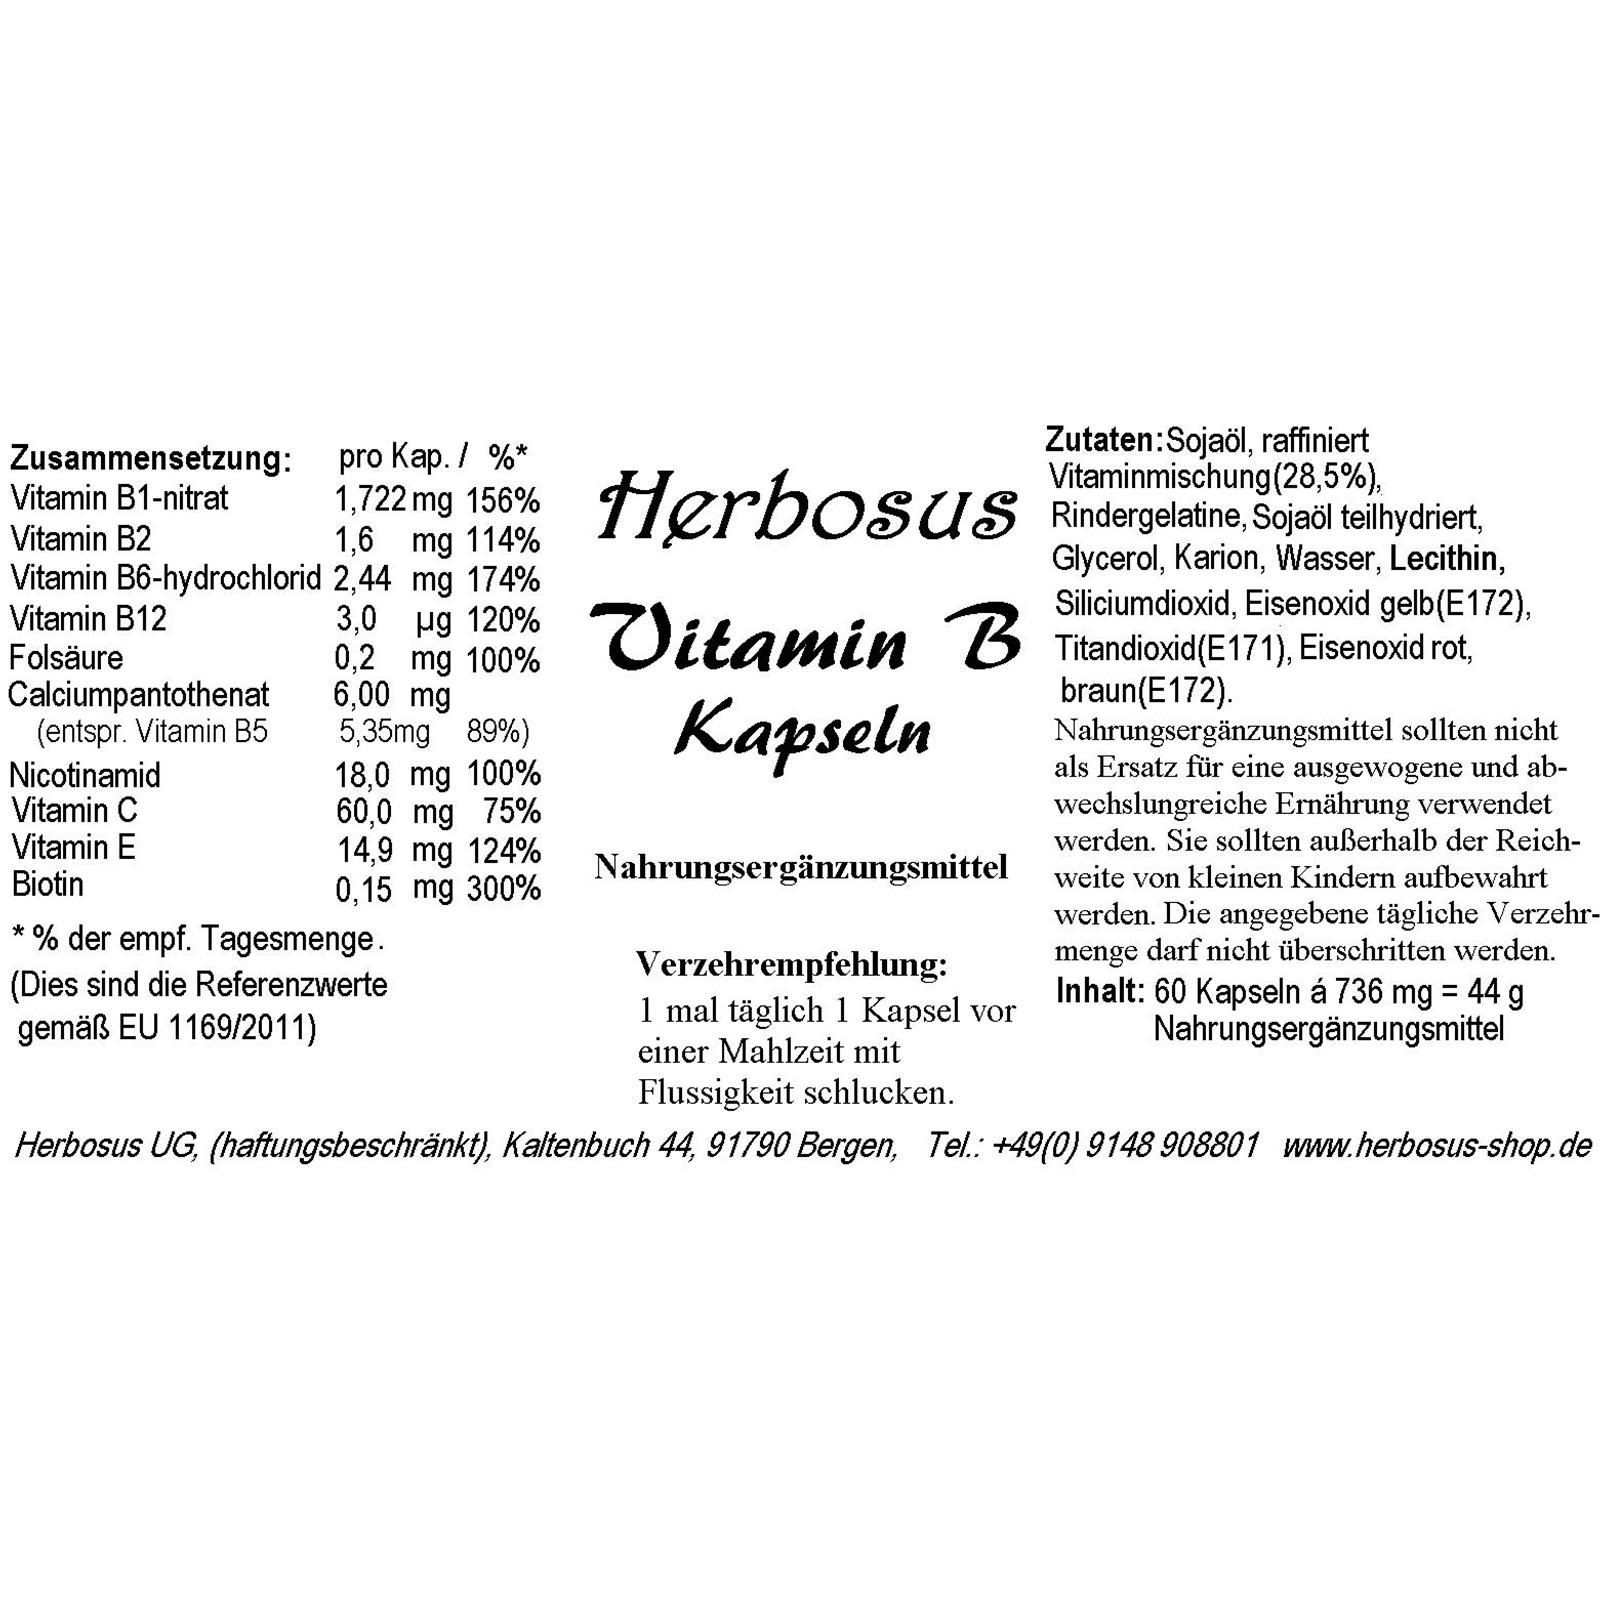 Vitamin-B-Kapseln von Herbosus